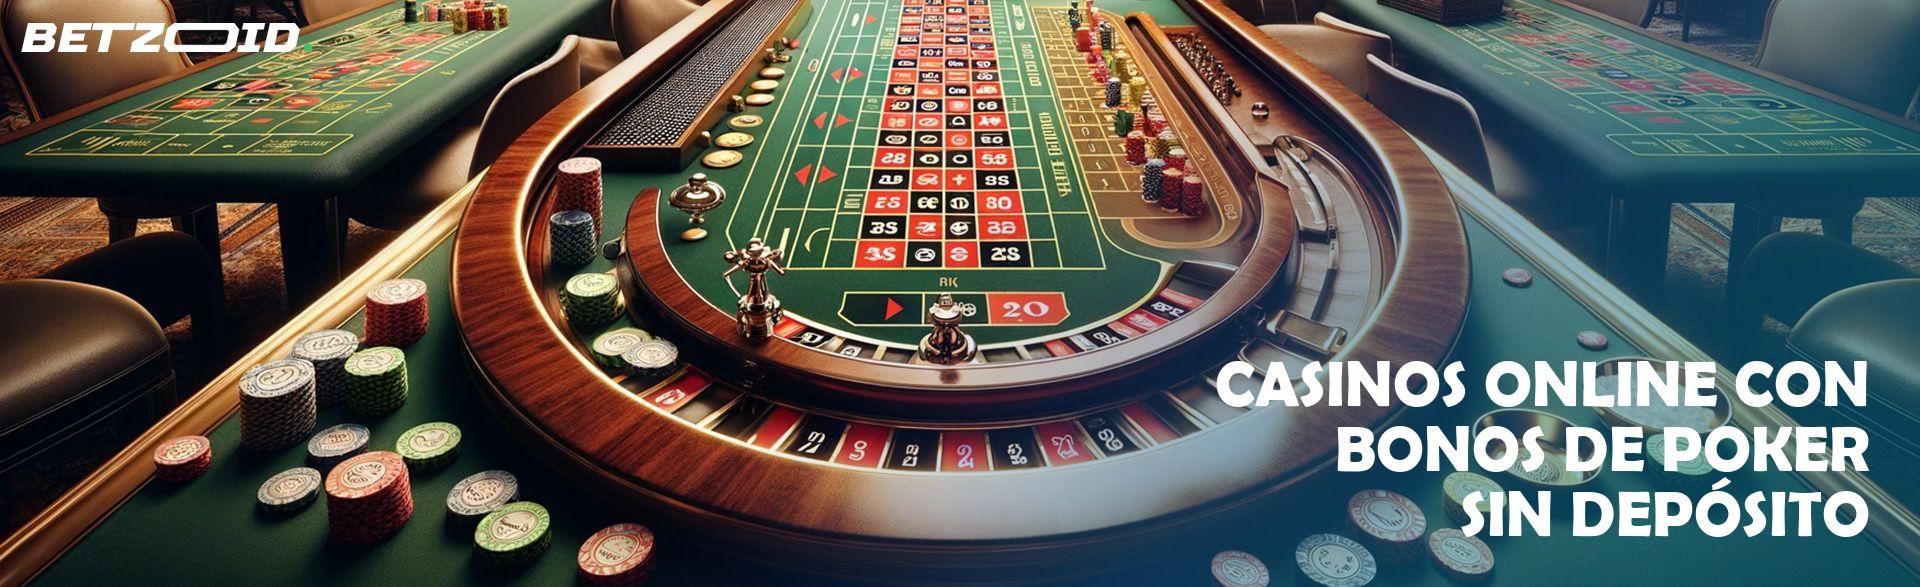 Casinos Online con Bonos de Poker sin Depósito.